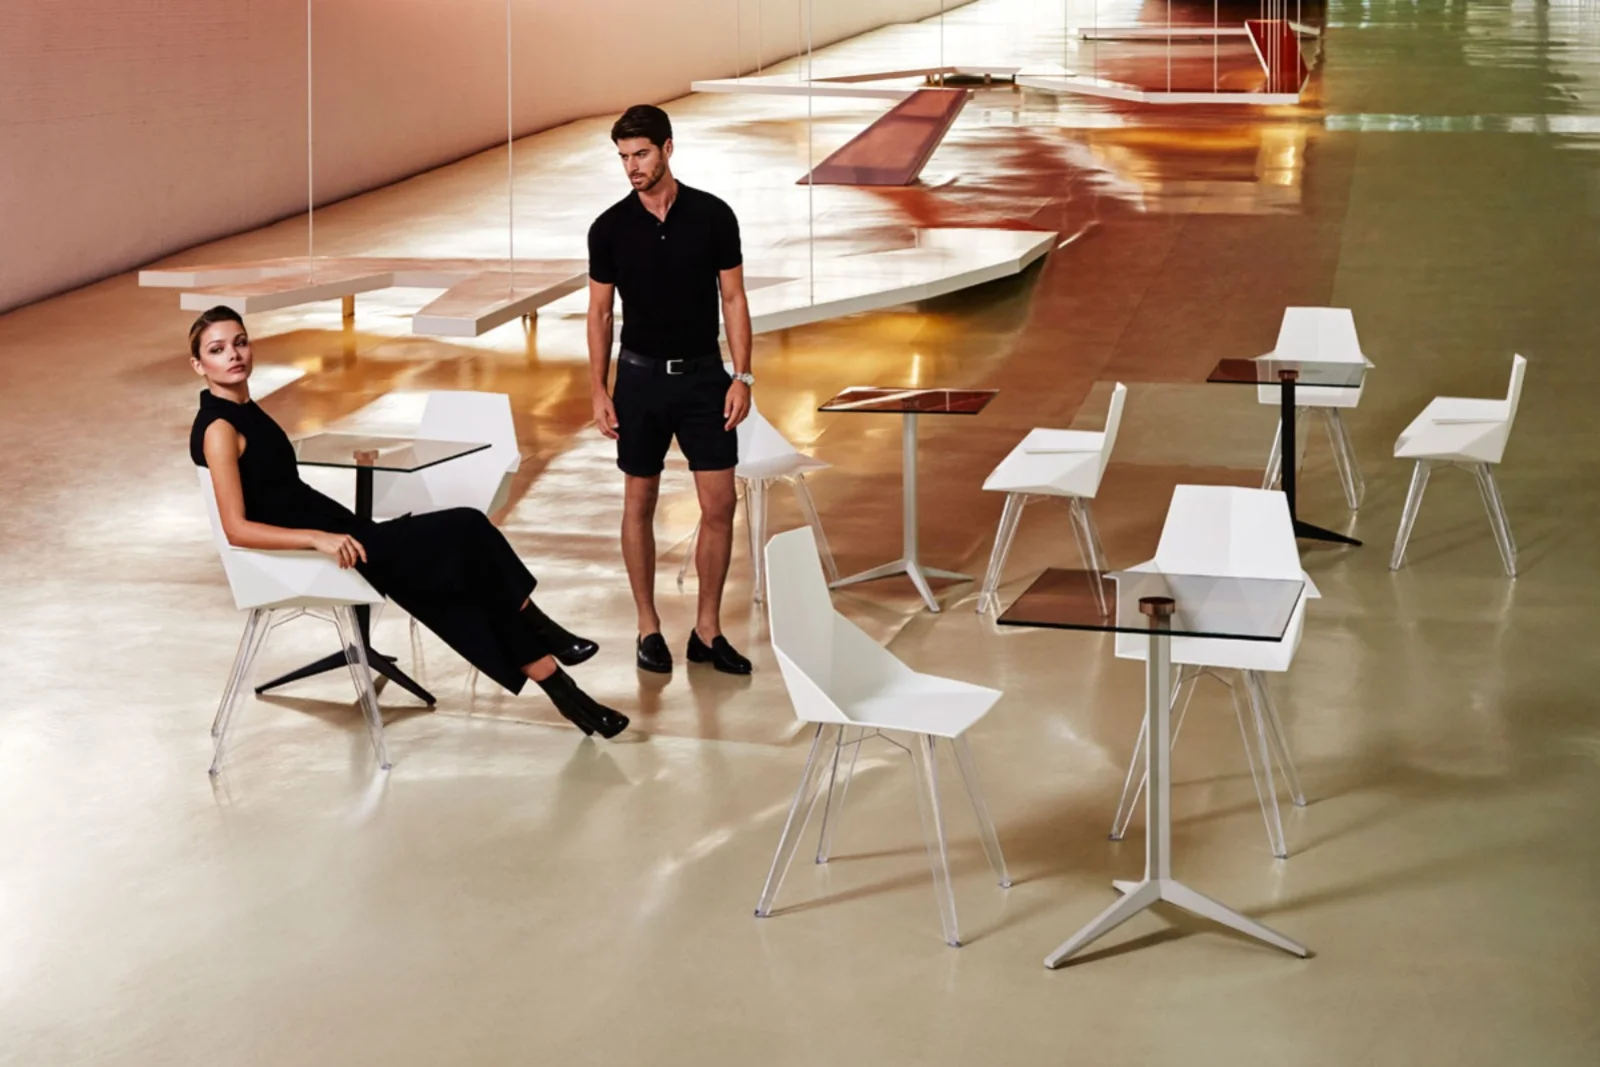 Vondom FAZ | Stuhl mit transparenten Beinen